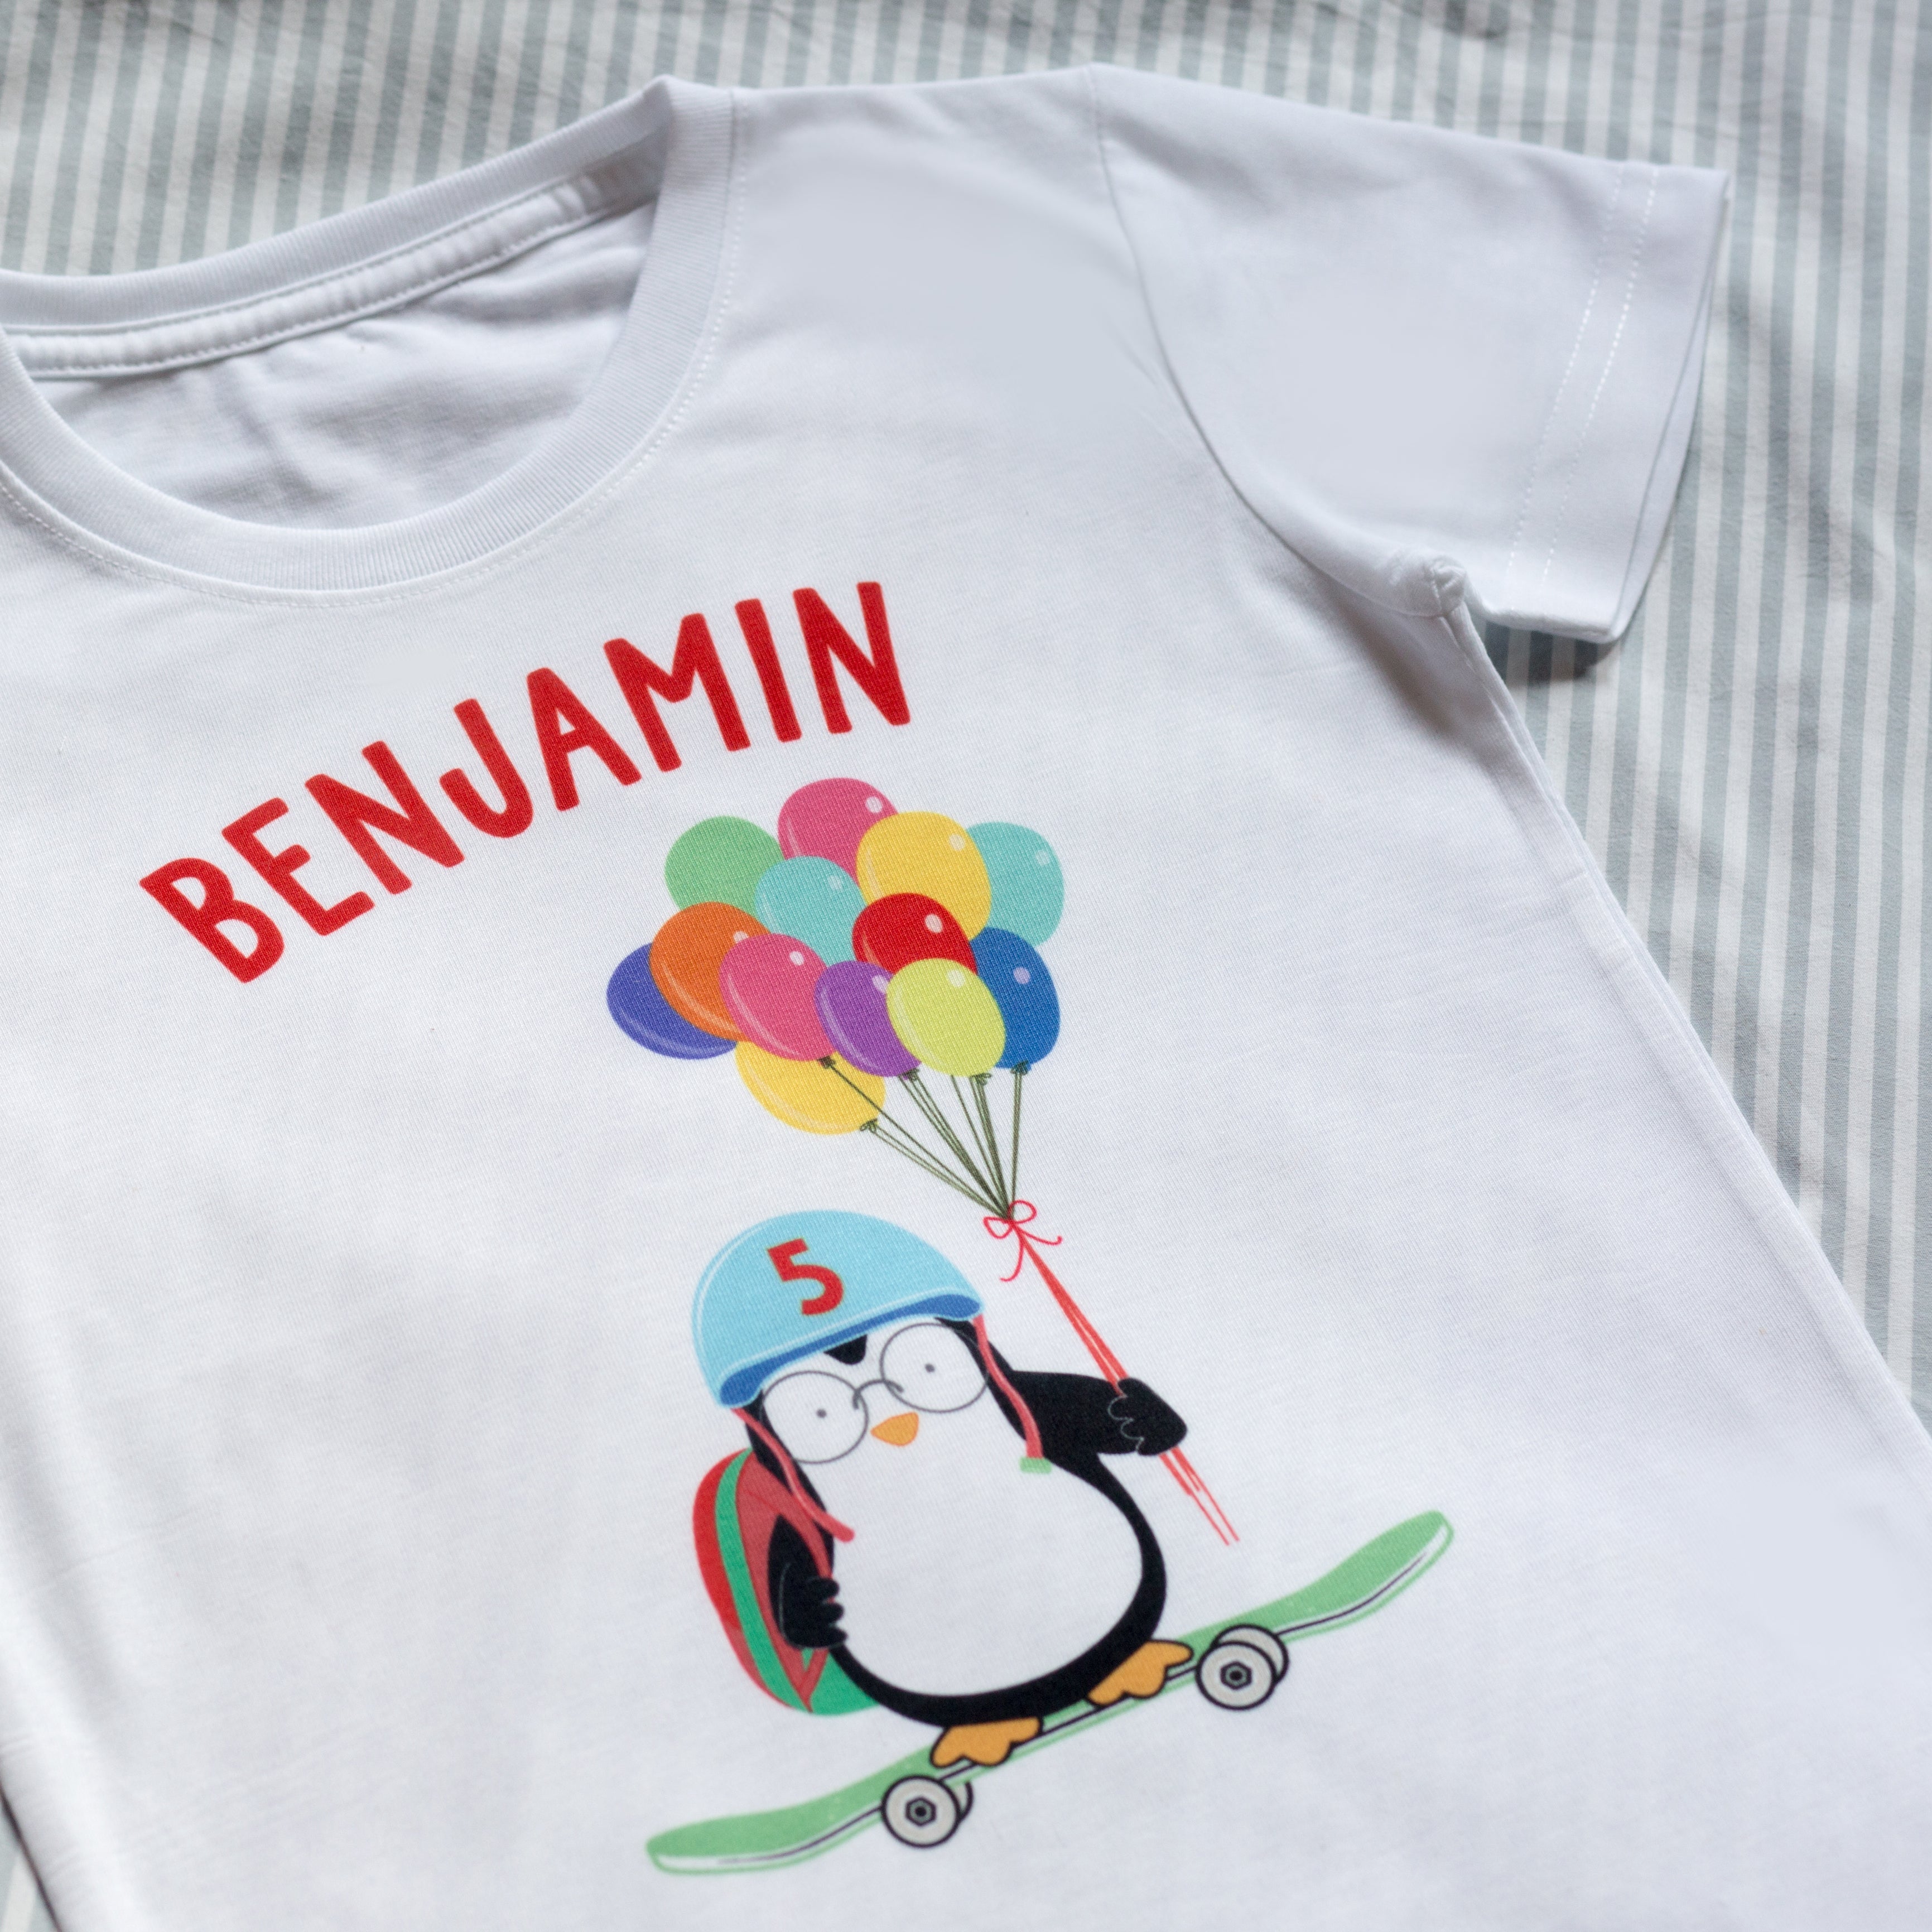 Children's Skateboarding Penguin Playground T Shirt